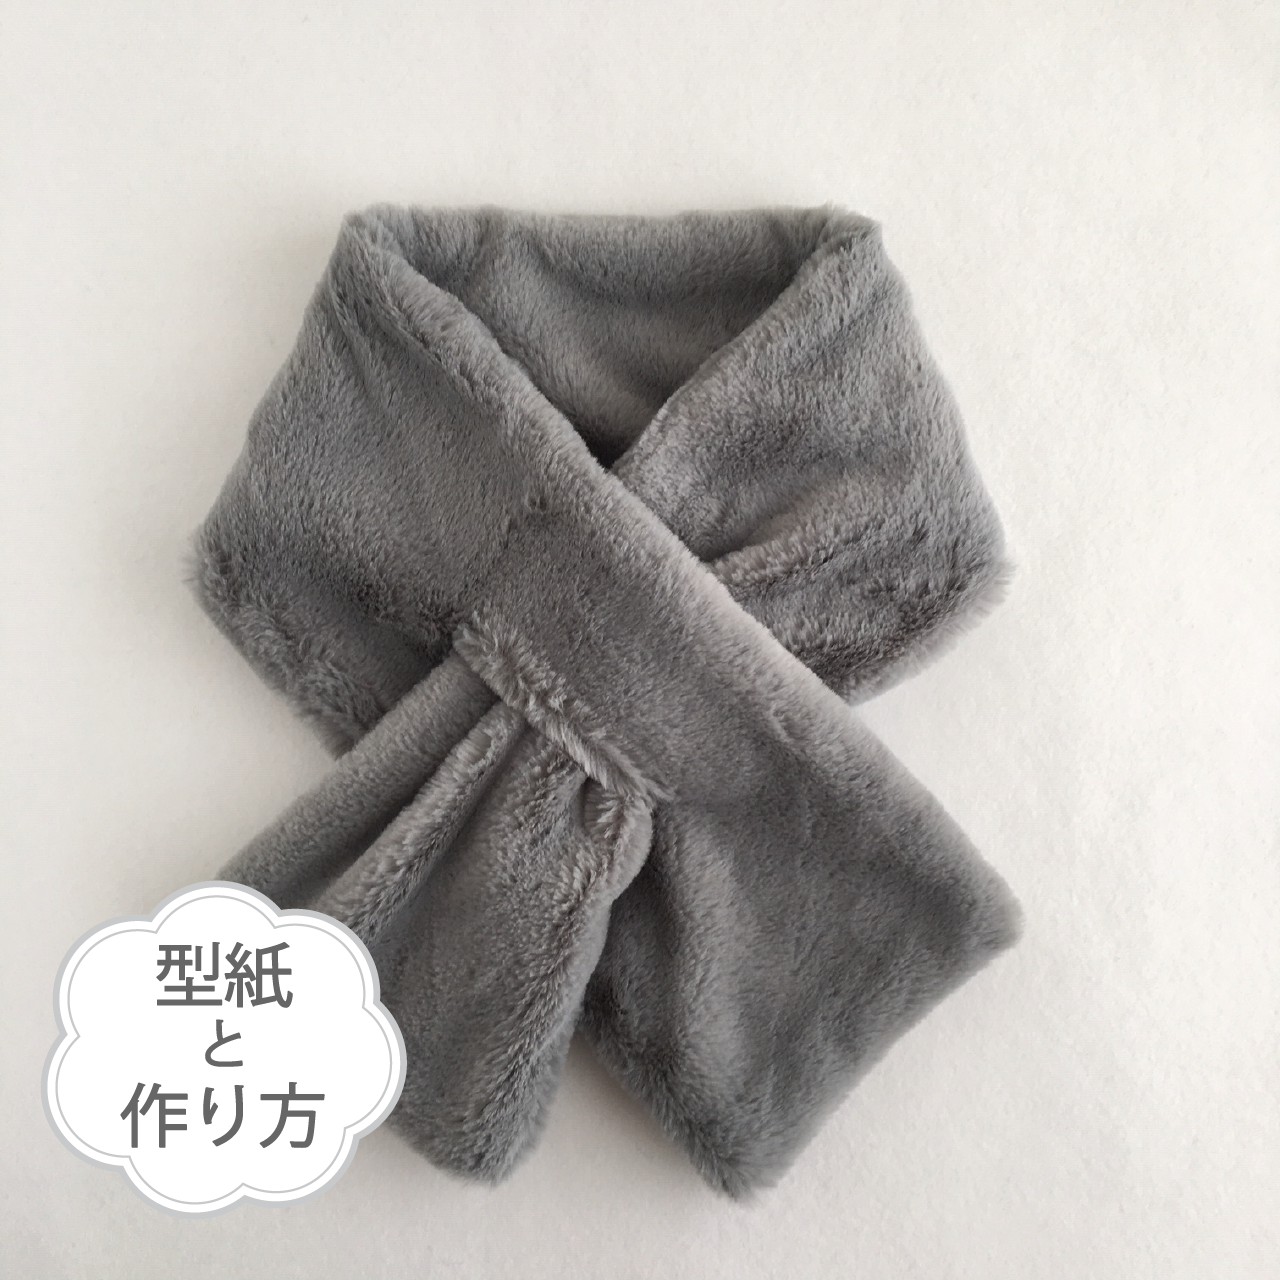 スリットマフラー 型紙と作り方のセット Kiｰacｰ1812 子供服の型紙ショップ Tsukuro ツクロ